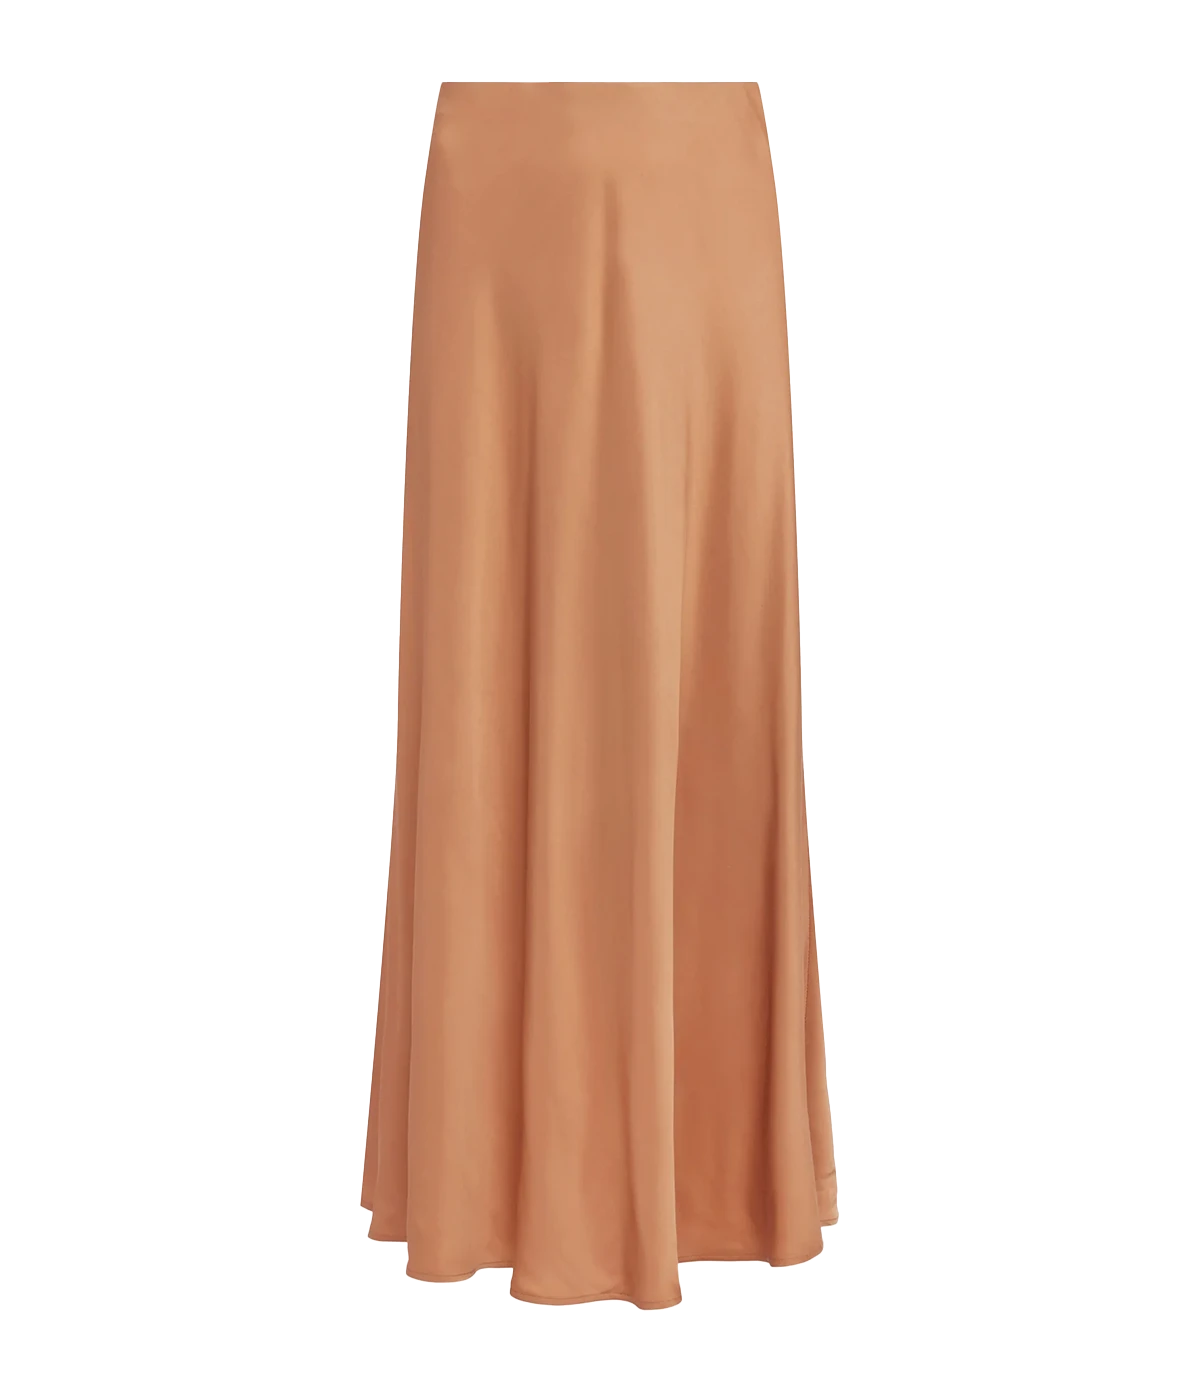 Clarisa Bias Length Skirt in Soft Tan